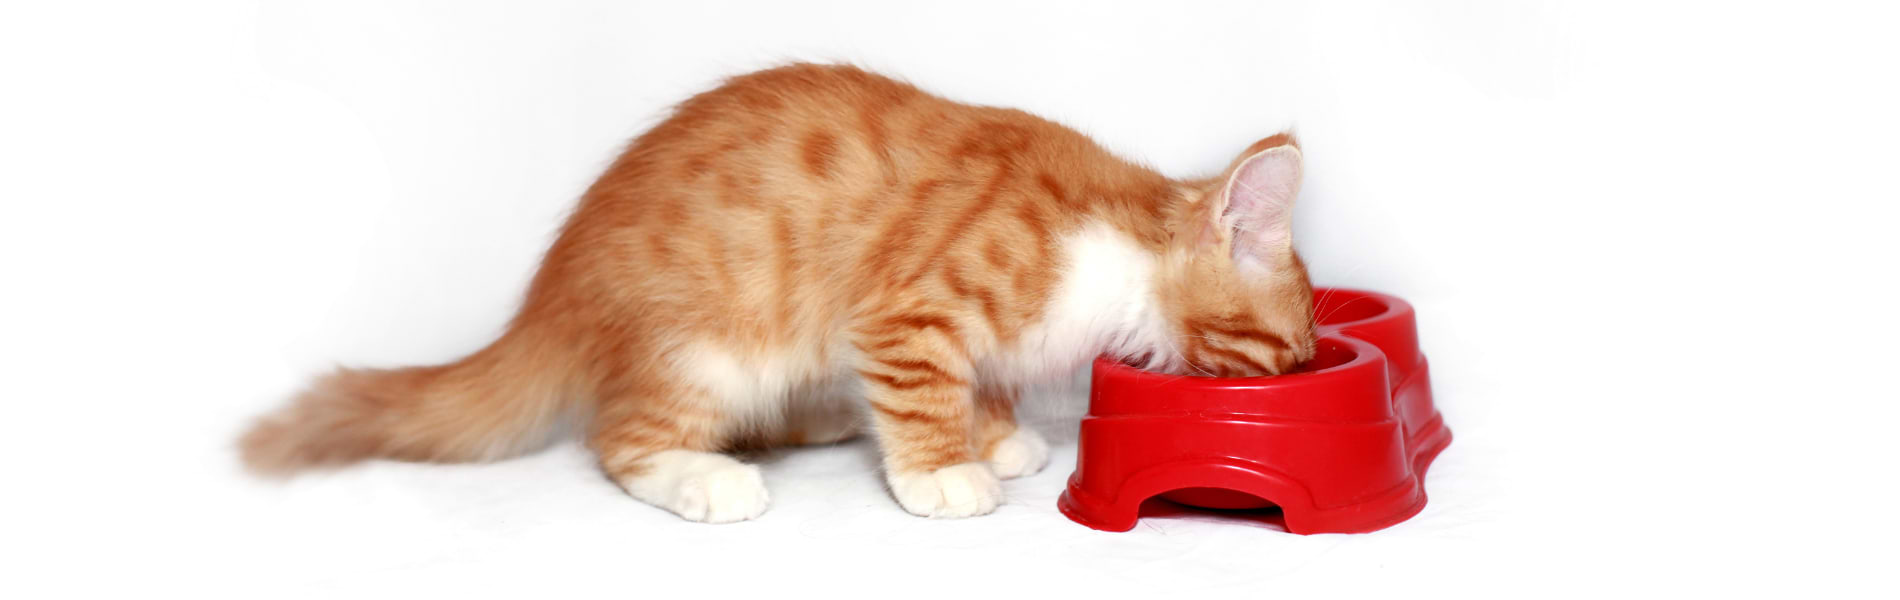 מזון איכותי לחתולים: מדריך לבחירה המושלמת